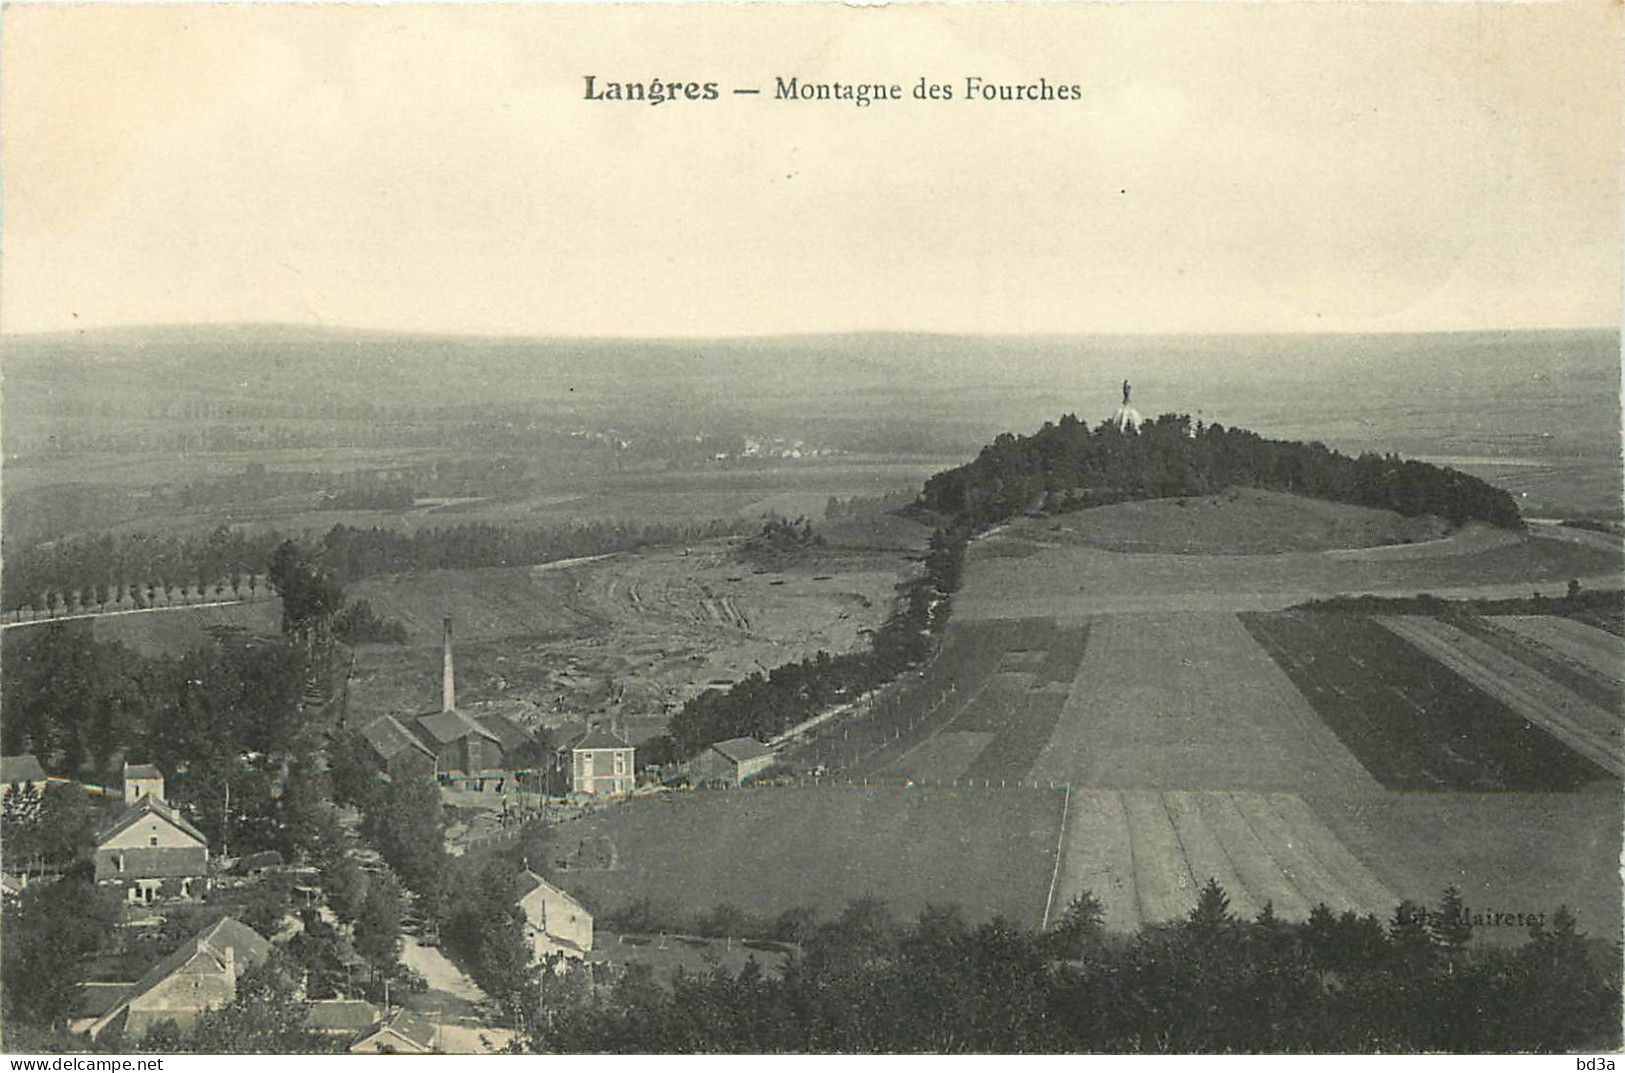 52 - LANGRES - MONTAGNE DES FOURCHES - Langres